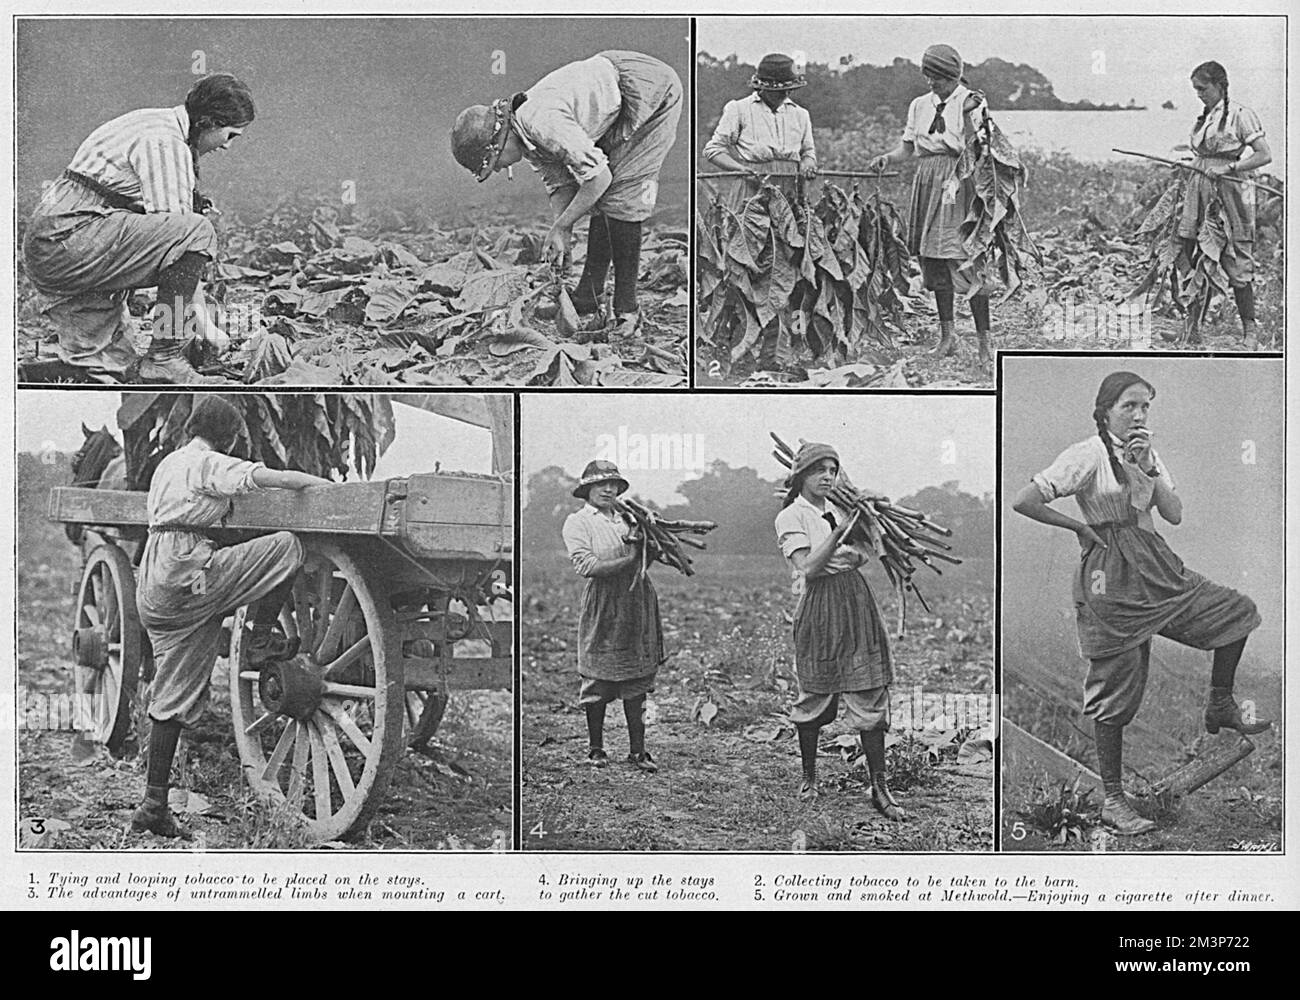 Arbeiterinnen sammeln die Ernte auf dem Tabakanbau in Methwold, Norfolk 1915. Bild 1 zeigt, wie sie Tabak binden und in Schlingen legen, 2 zeigt, dass sie Tabak sammeln, der in die Scheune gebracht wird, 3, "die Vorteile nicht eingefahrener Gliedmaßen beim Anbringen eines Wagens", Anspielung auf die angezogenen Hosen, 4, die den Tabak einsammeln, und 5, In Methwold gewachsen und geräuchert, raucht ein Mädchen nach dem Essen gern. Datum: 1915 Stockfoto